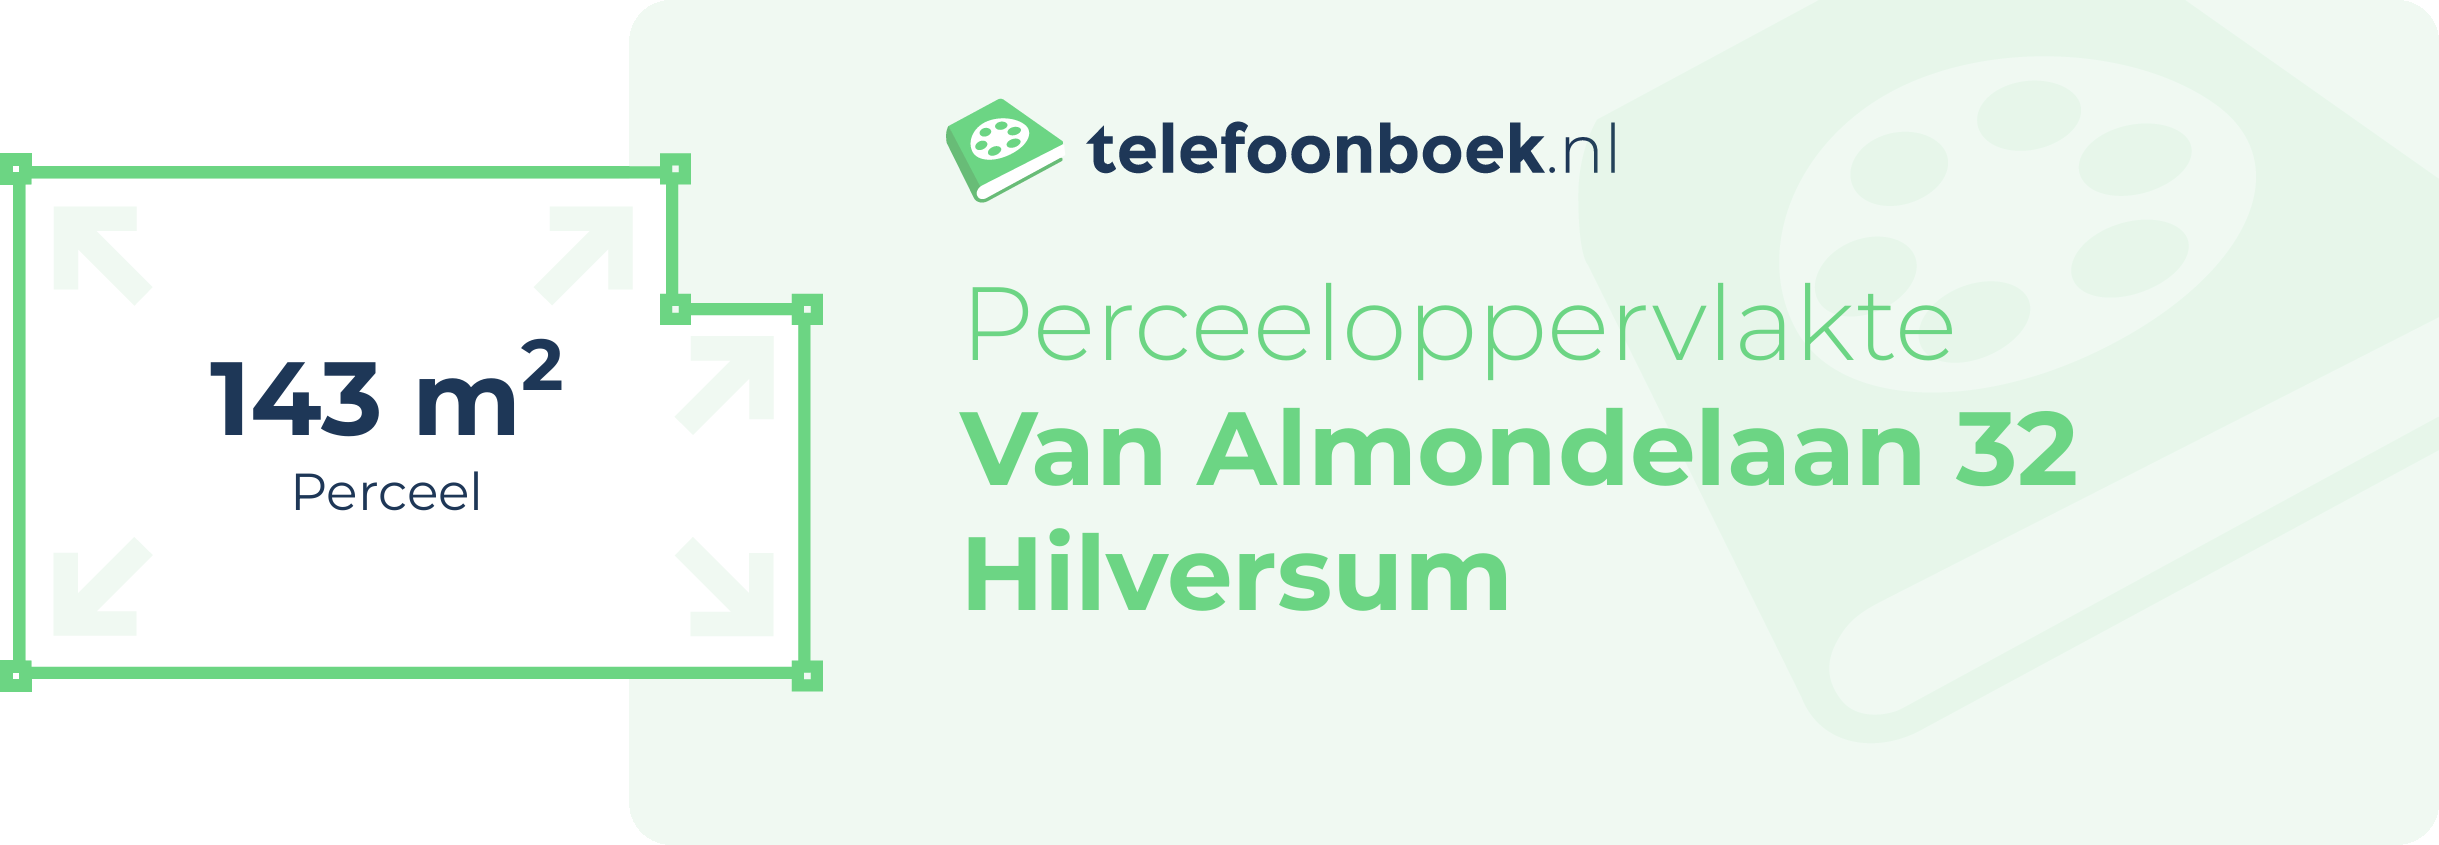 Perceeloppervlakte Van Almondelaan 32 Hilversum